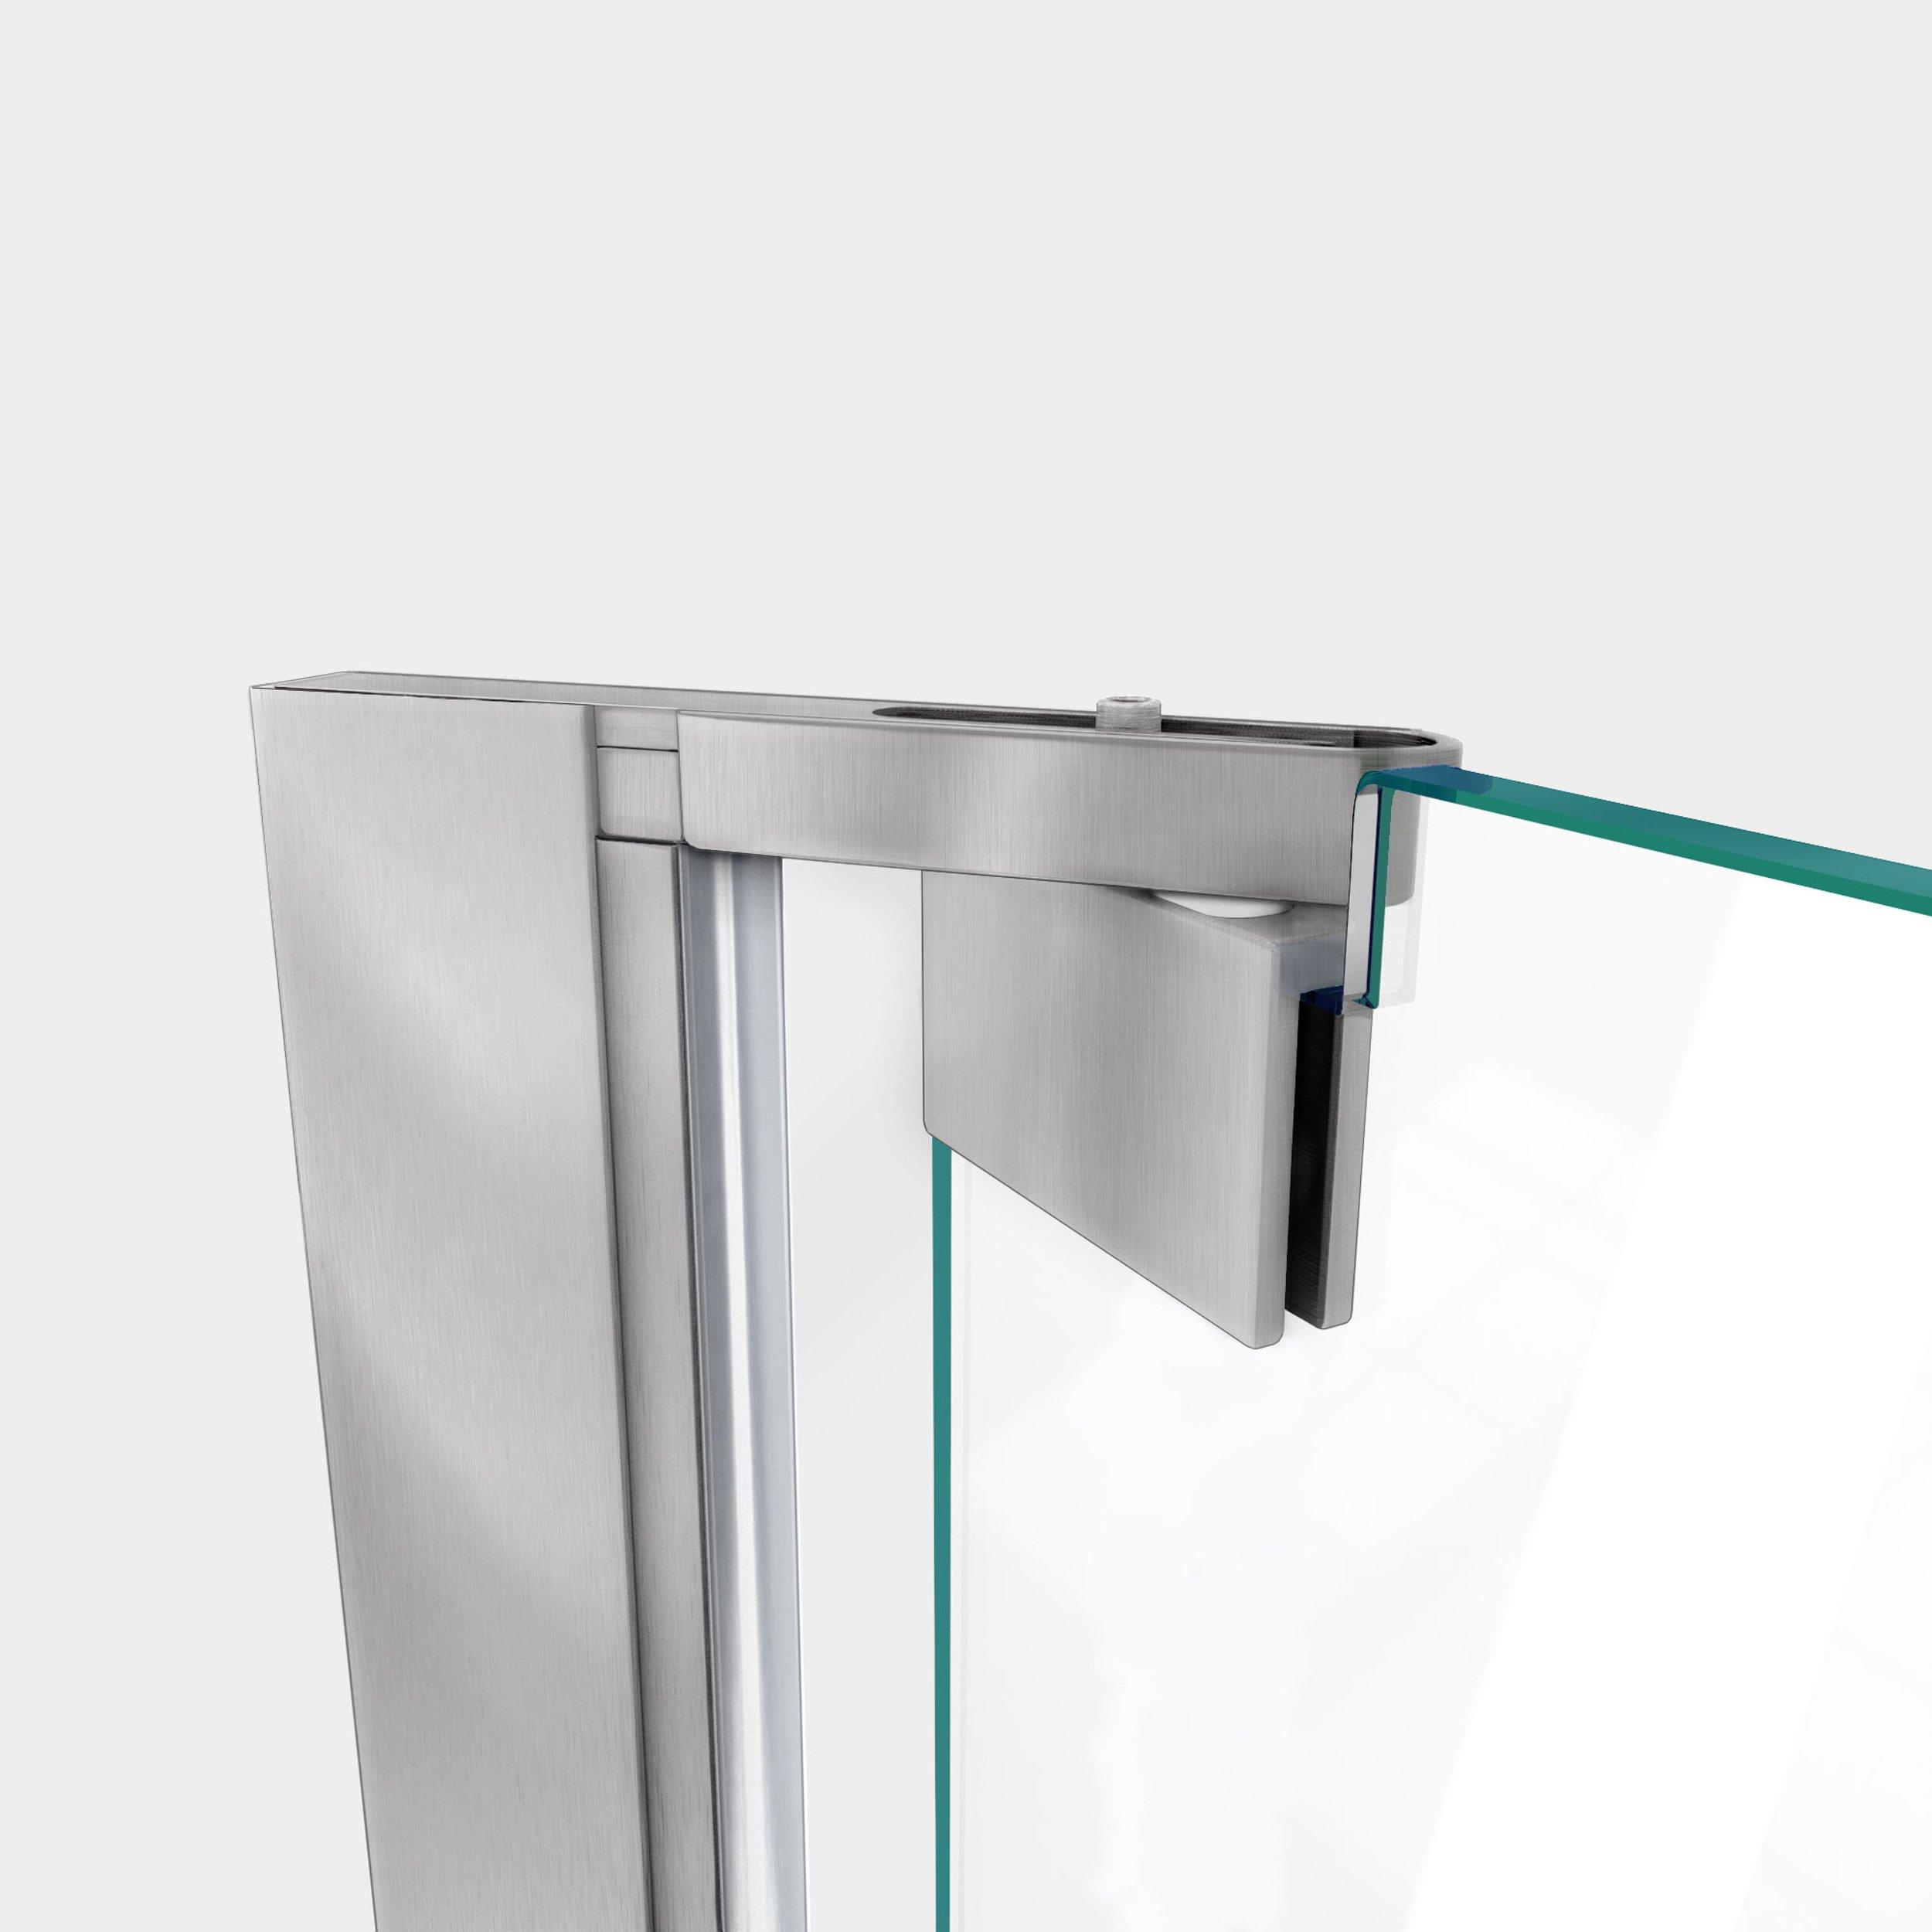 Elegance-LS Brushed Nickel Pivot Shower Door